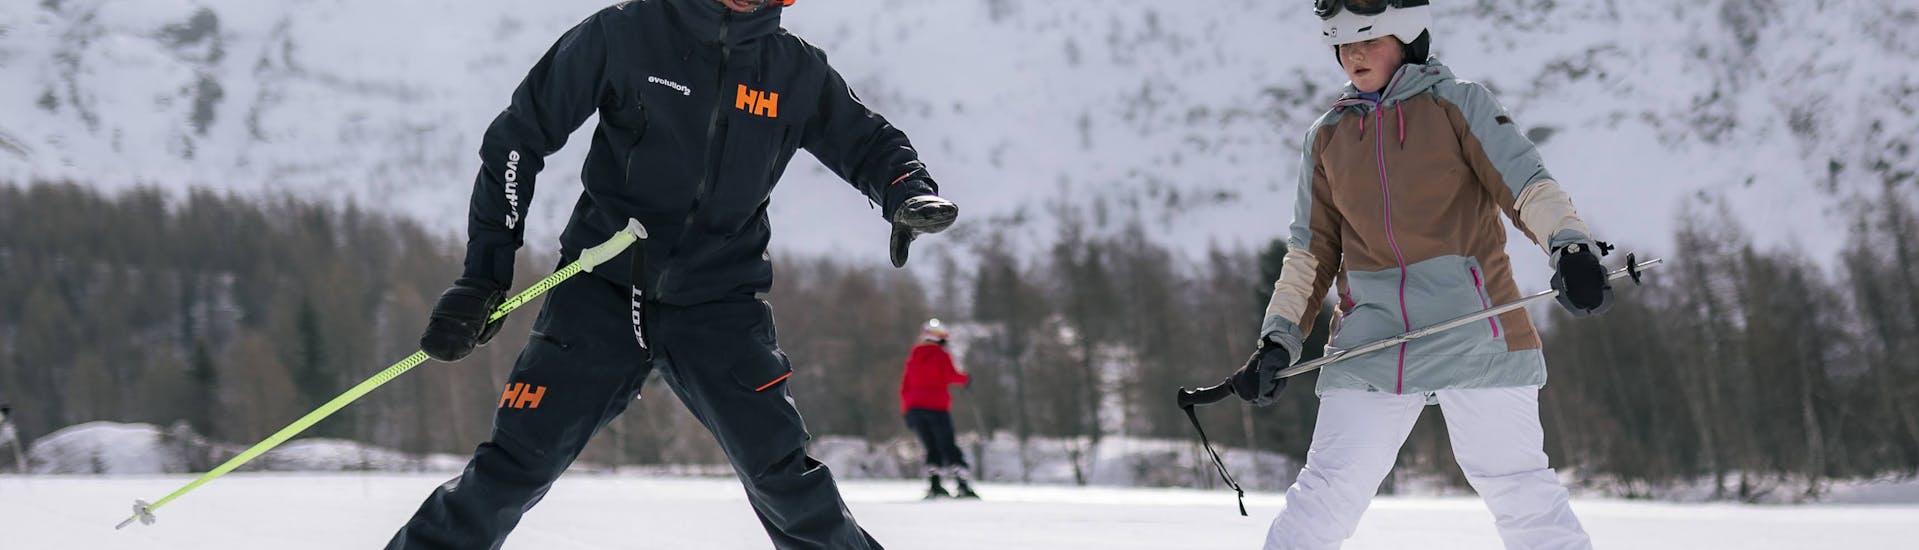 Moniteur aidant une jeune adulte pendant une leçon de ski privée pour adultes de tous niveaux à Chamonix.